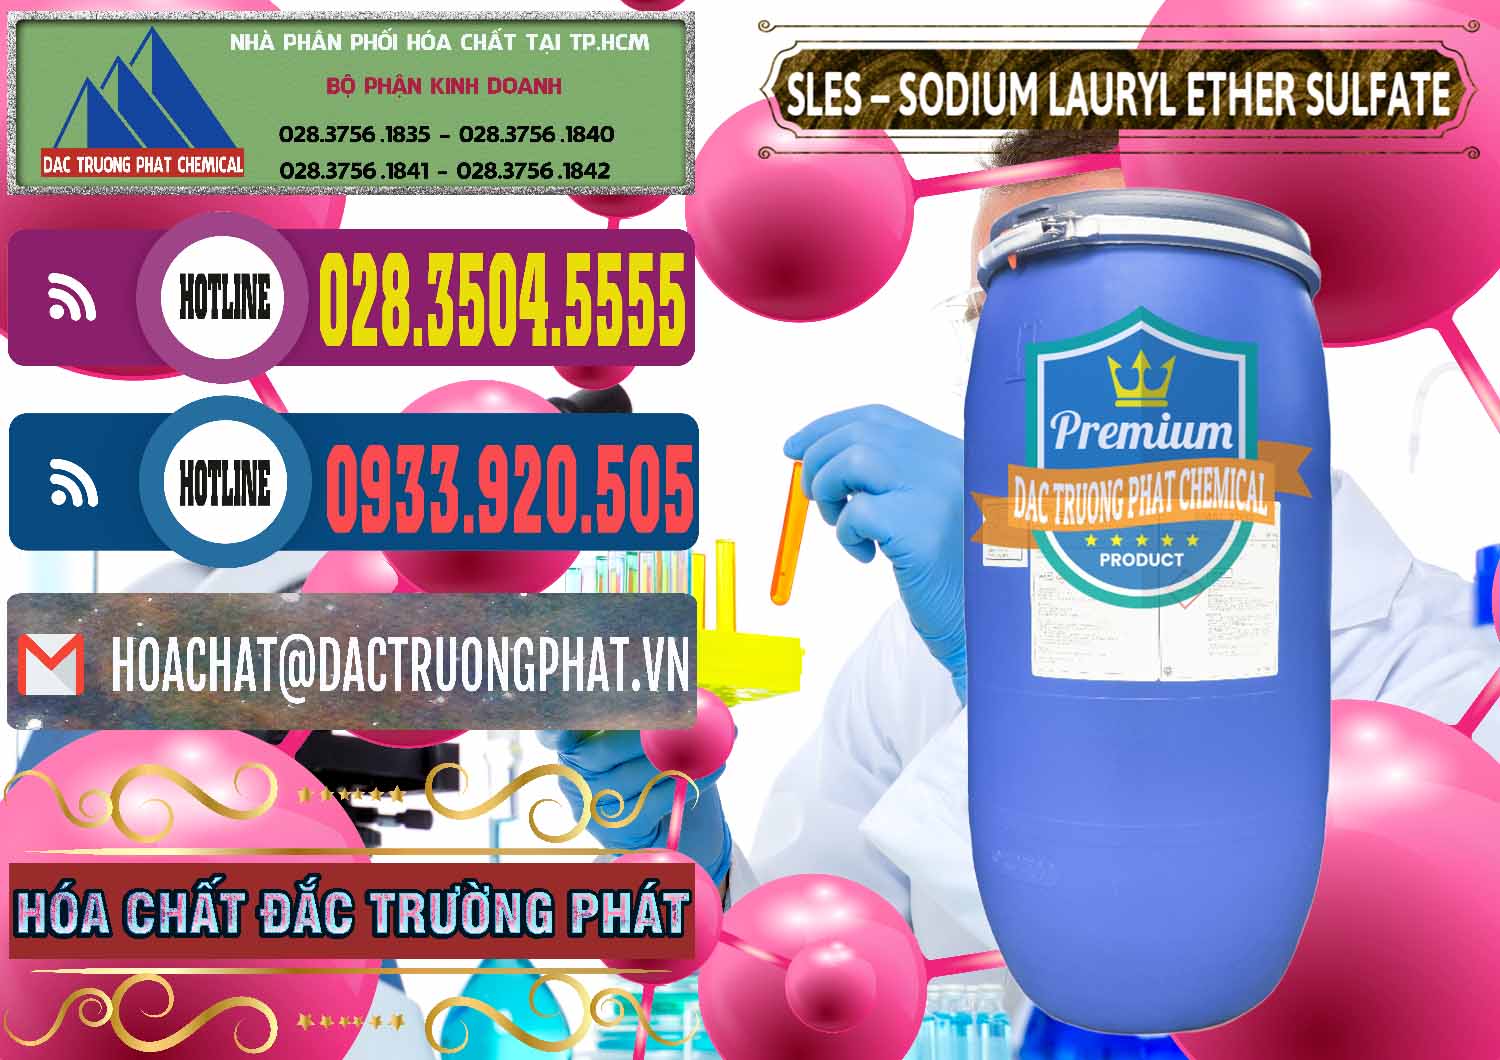 Cty chuyên bán & cung cấp Chất Tạo Bọt Sles - Sodium Lauryl Ether Sulphate Kao Indonesia - 0046 - Đơn vị kinh doanh _ cung cấp hóa chất tại TP.HCM - muabanhoachat.com.vn